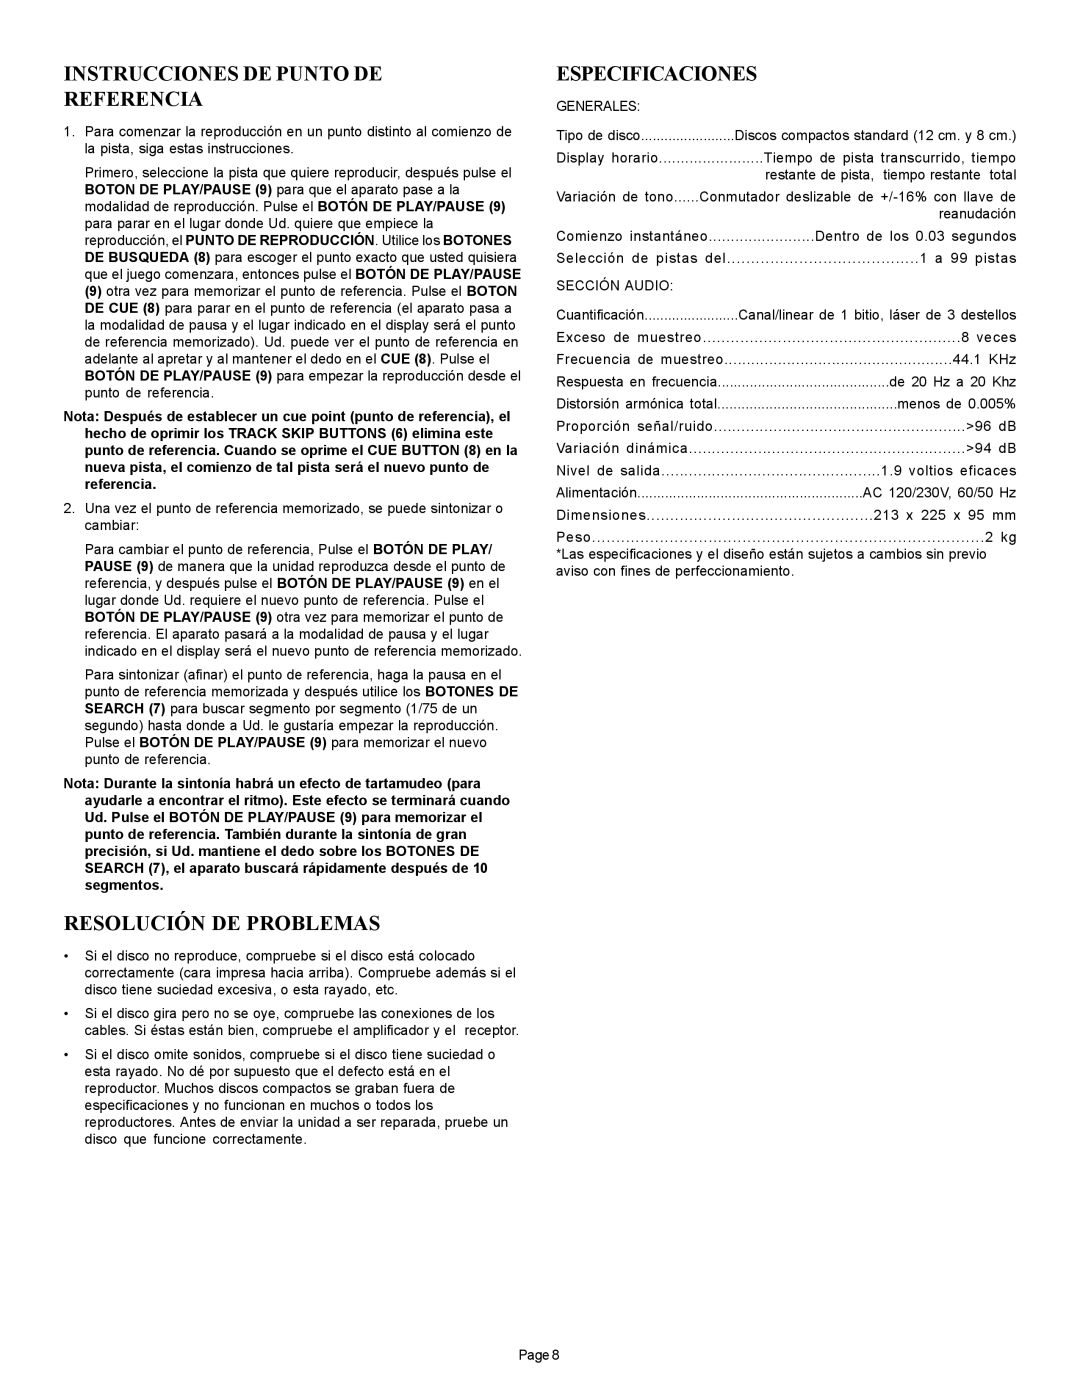 Gemini CDJ-10 manual Instrucciones De Punto De Referencia, Resolución De Problemas, Especificaciones 